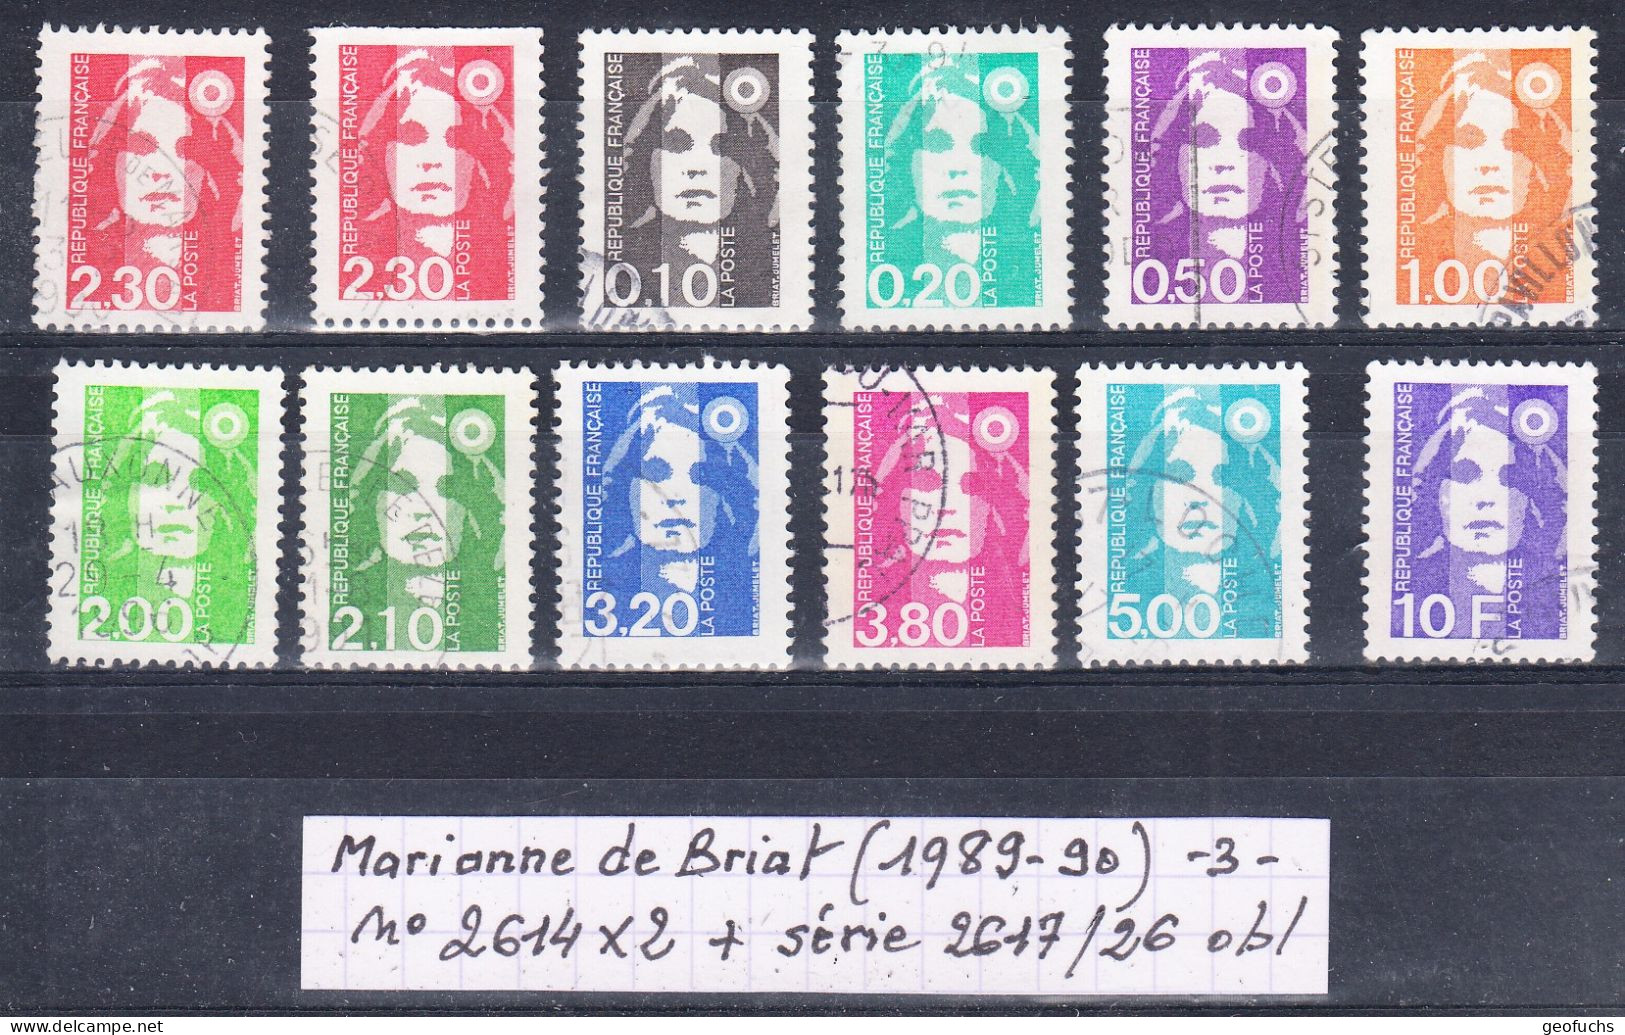 France M. De Briat (1989-90) Y/T N° 2614X2 +  + Série 2617/26 Oblitérés (lot 3) - 1989-1996 Bicentenial Marianne